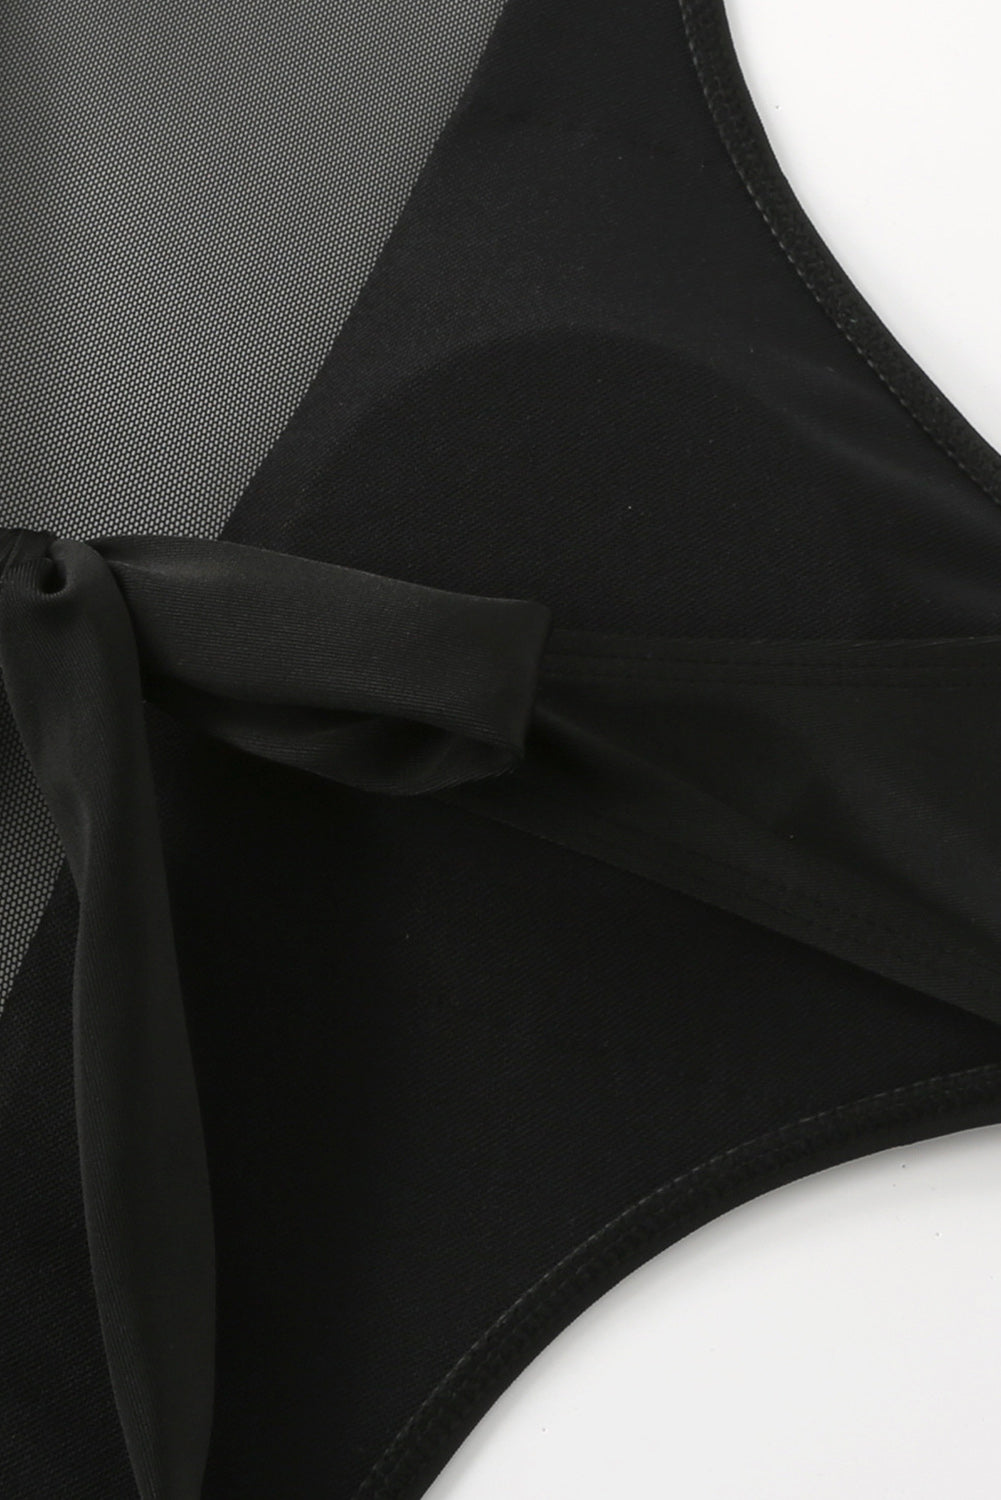 Schwarzer Monokini-Badeanzug mit gerafftem Netzausschnitt und Kordelzug